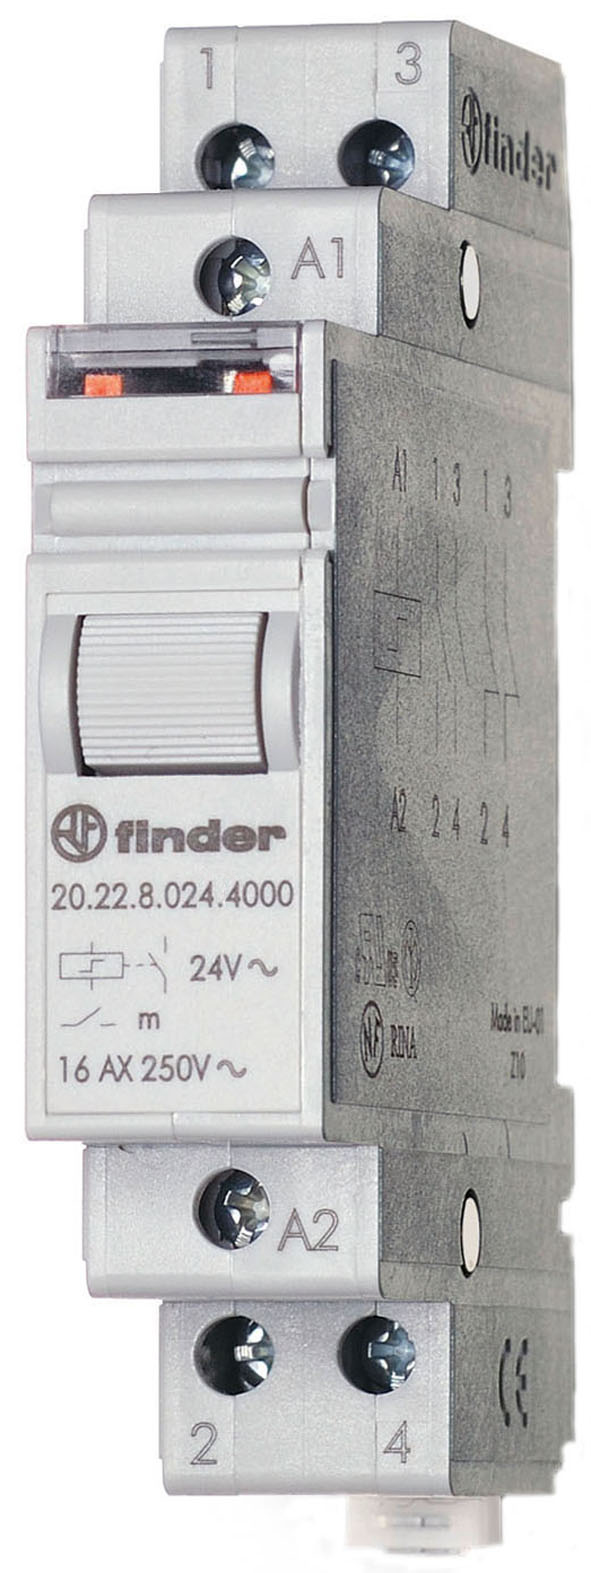 Impulsschakelaar voor in-line installatie, 2 NO-contacten 16 A, aan/uit, voor 230 V AC